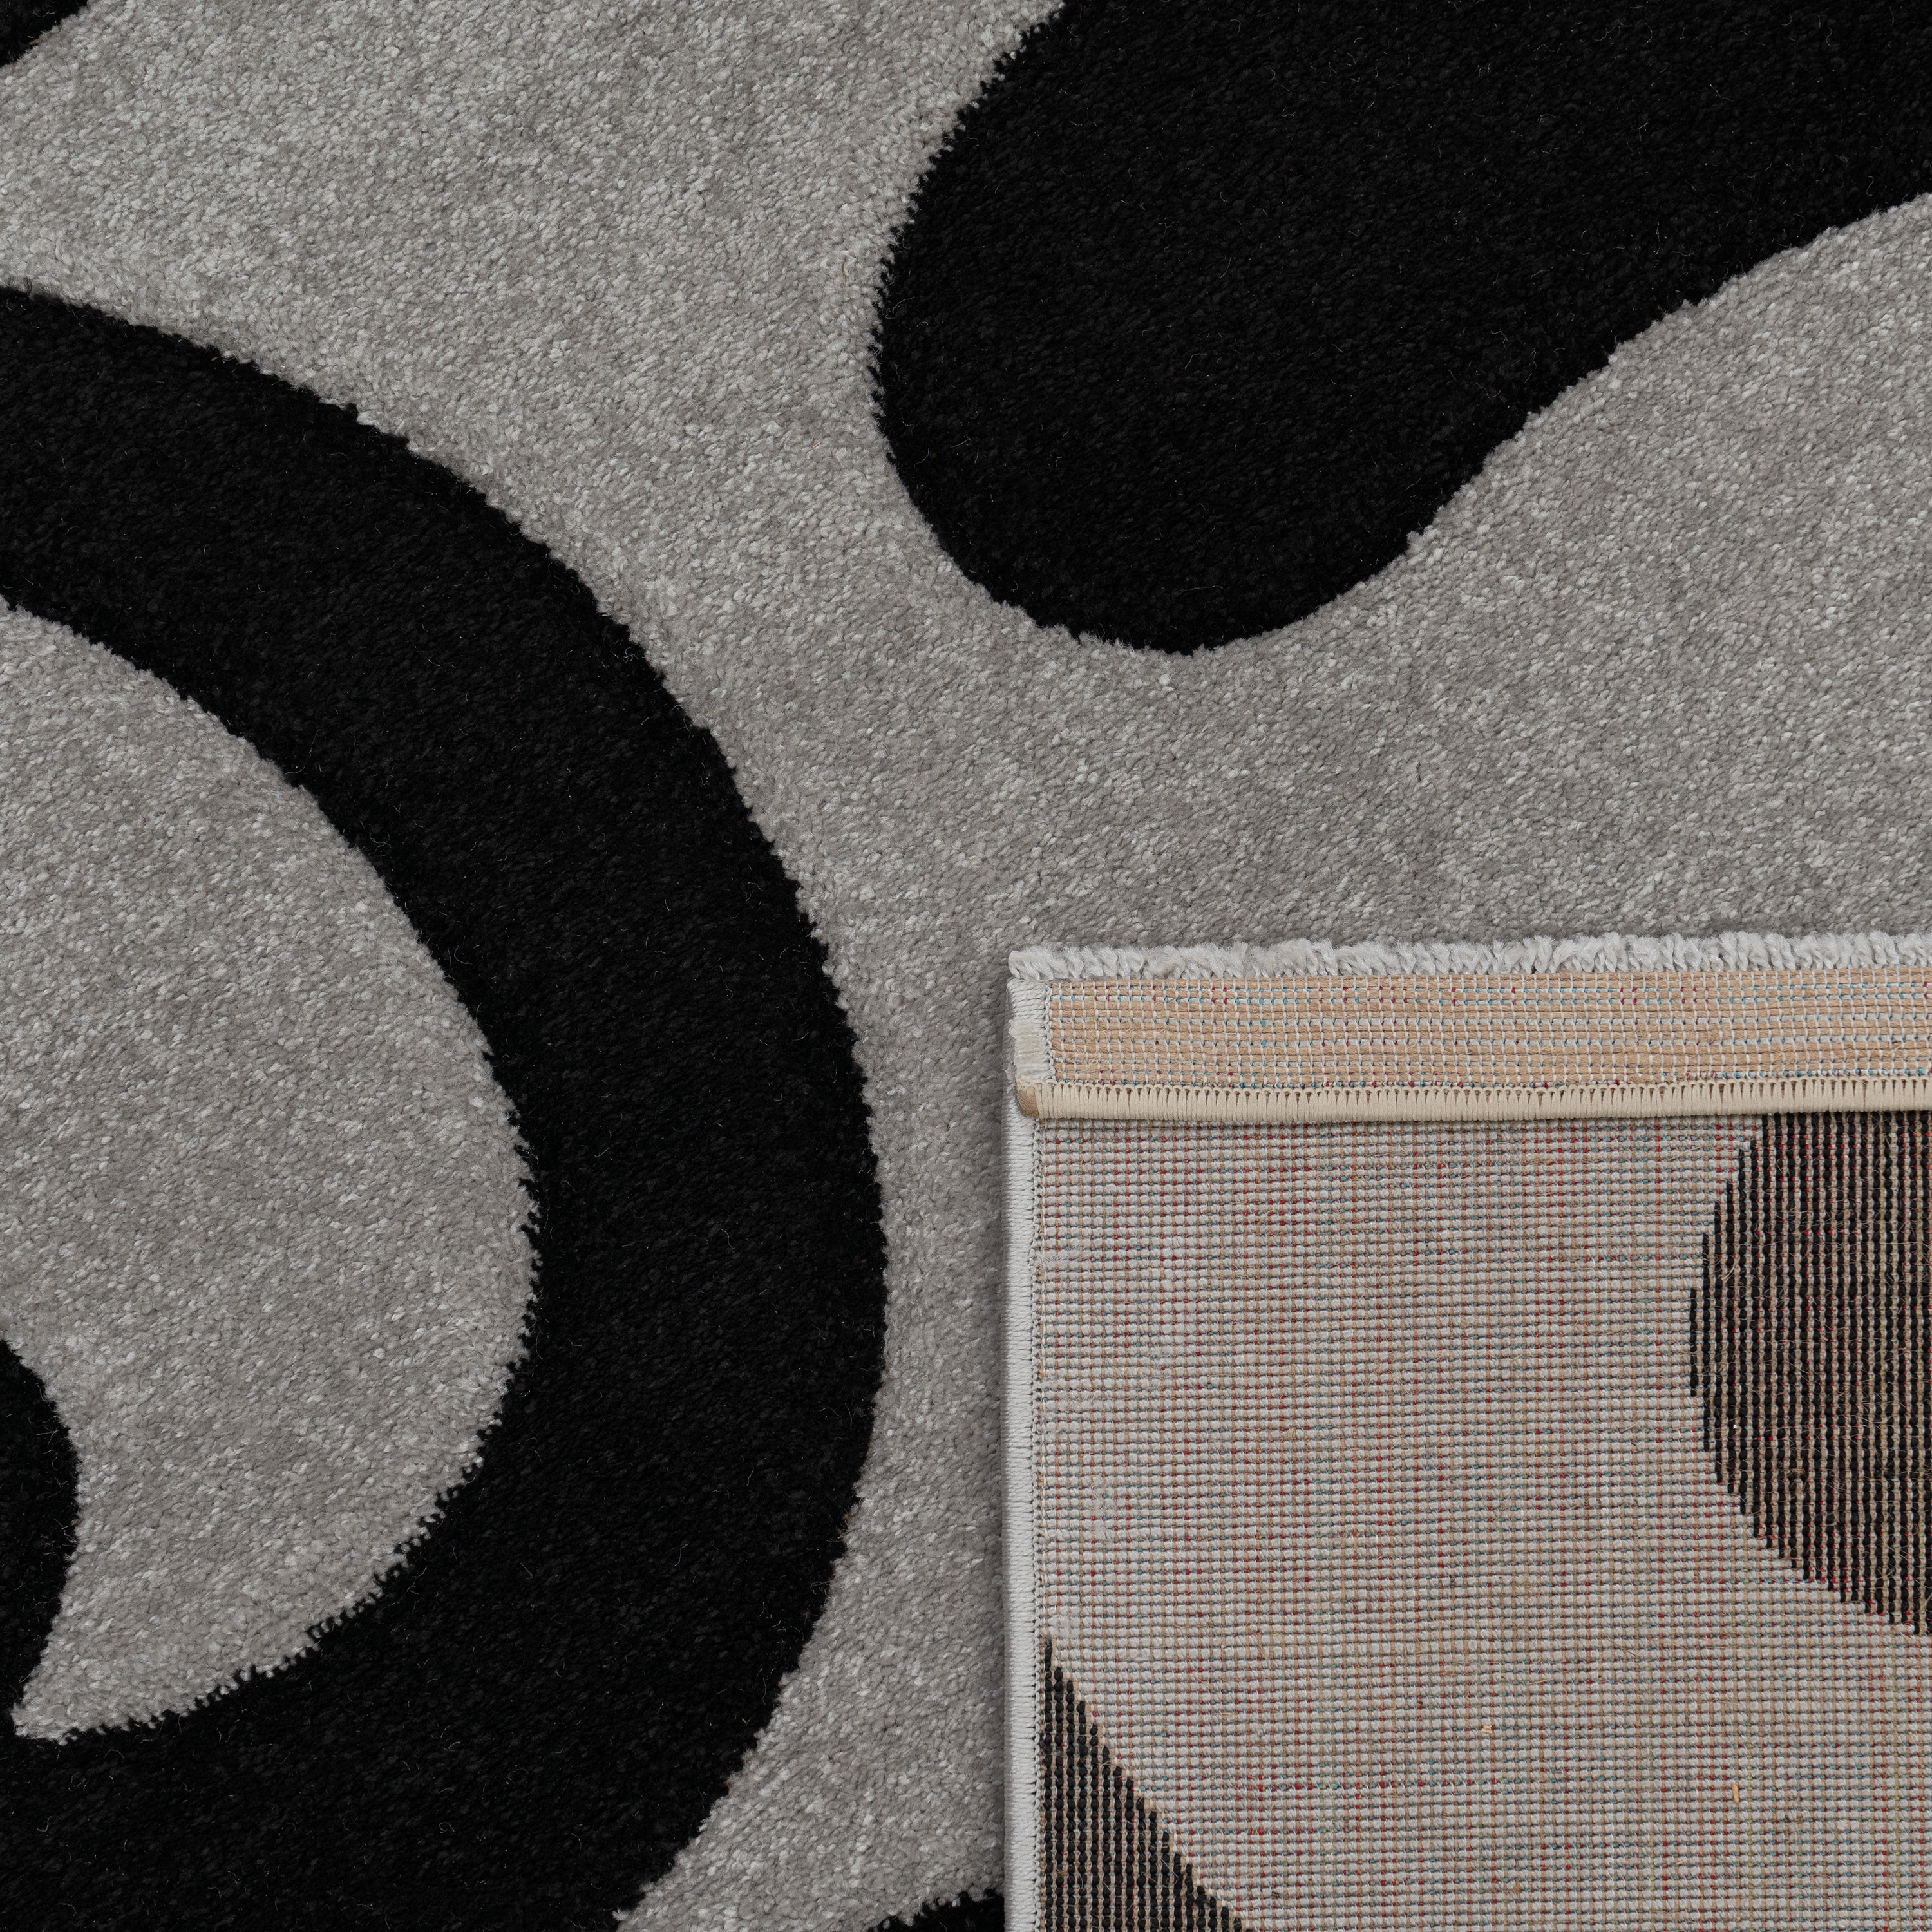 Designer Teppich mit Konturenschnitt Modern Grau 